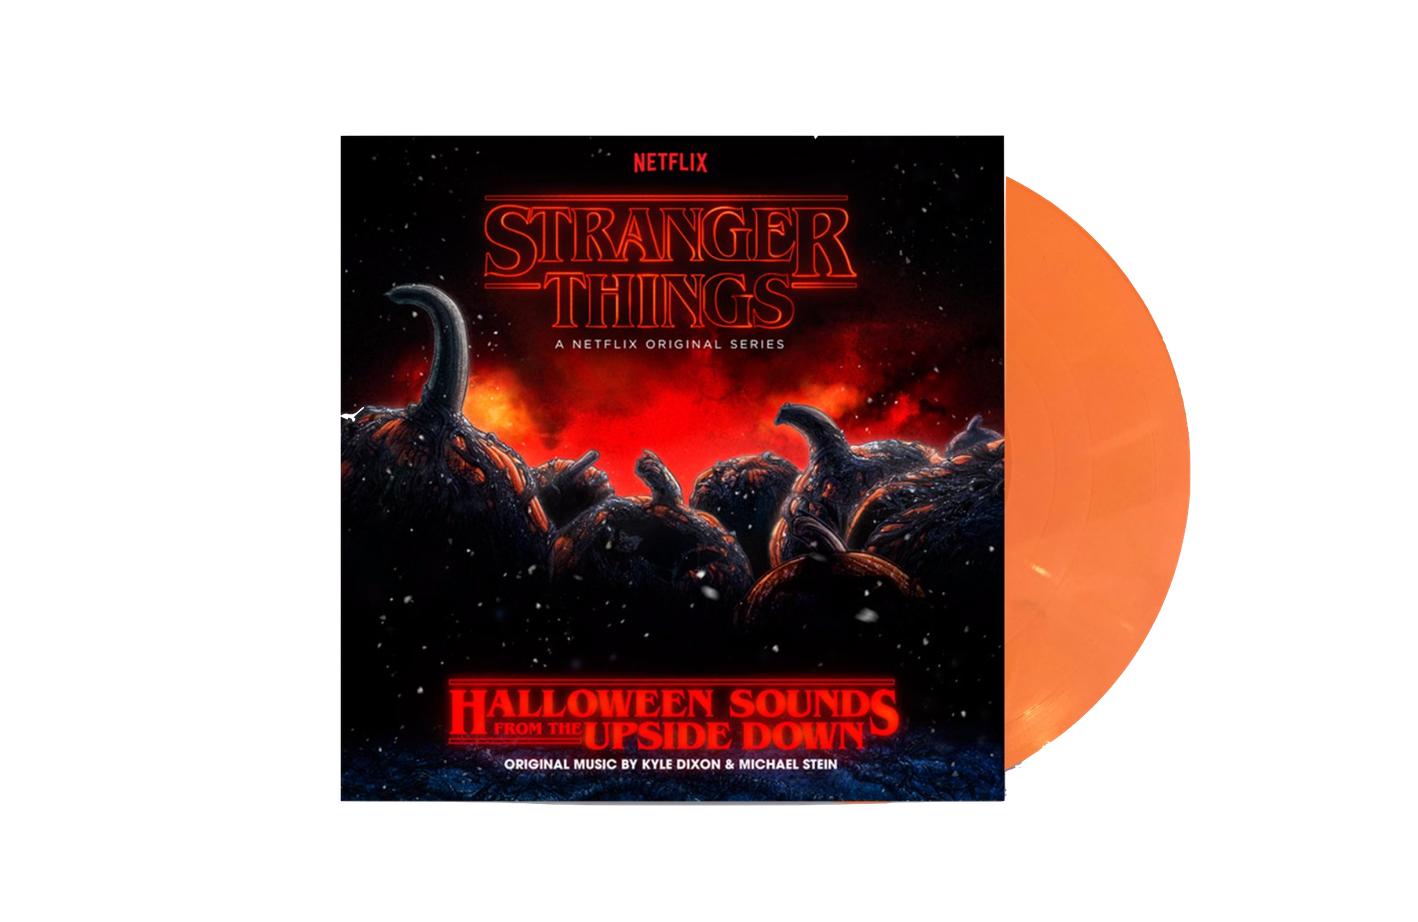 'Halloween Sounds from the Upside Down' - Oh man, bitte nicht noch eine 'Stranger Things' Vinyl